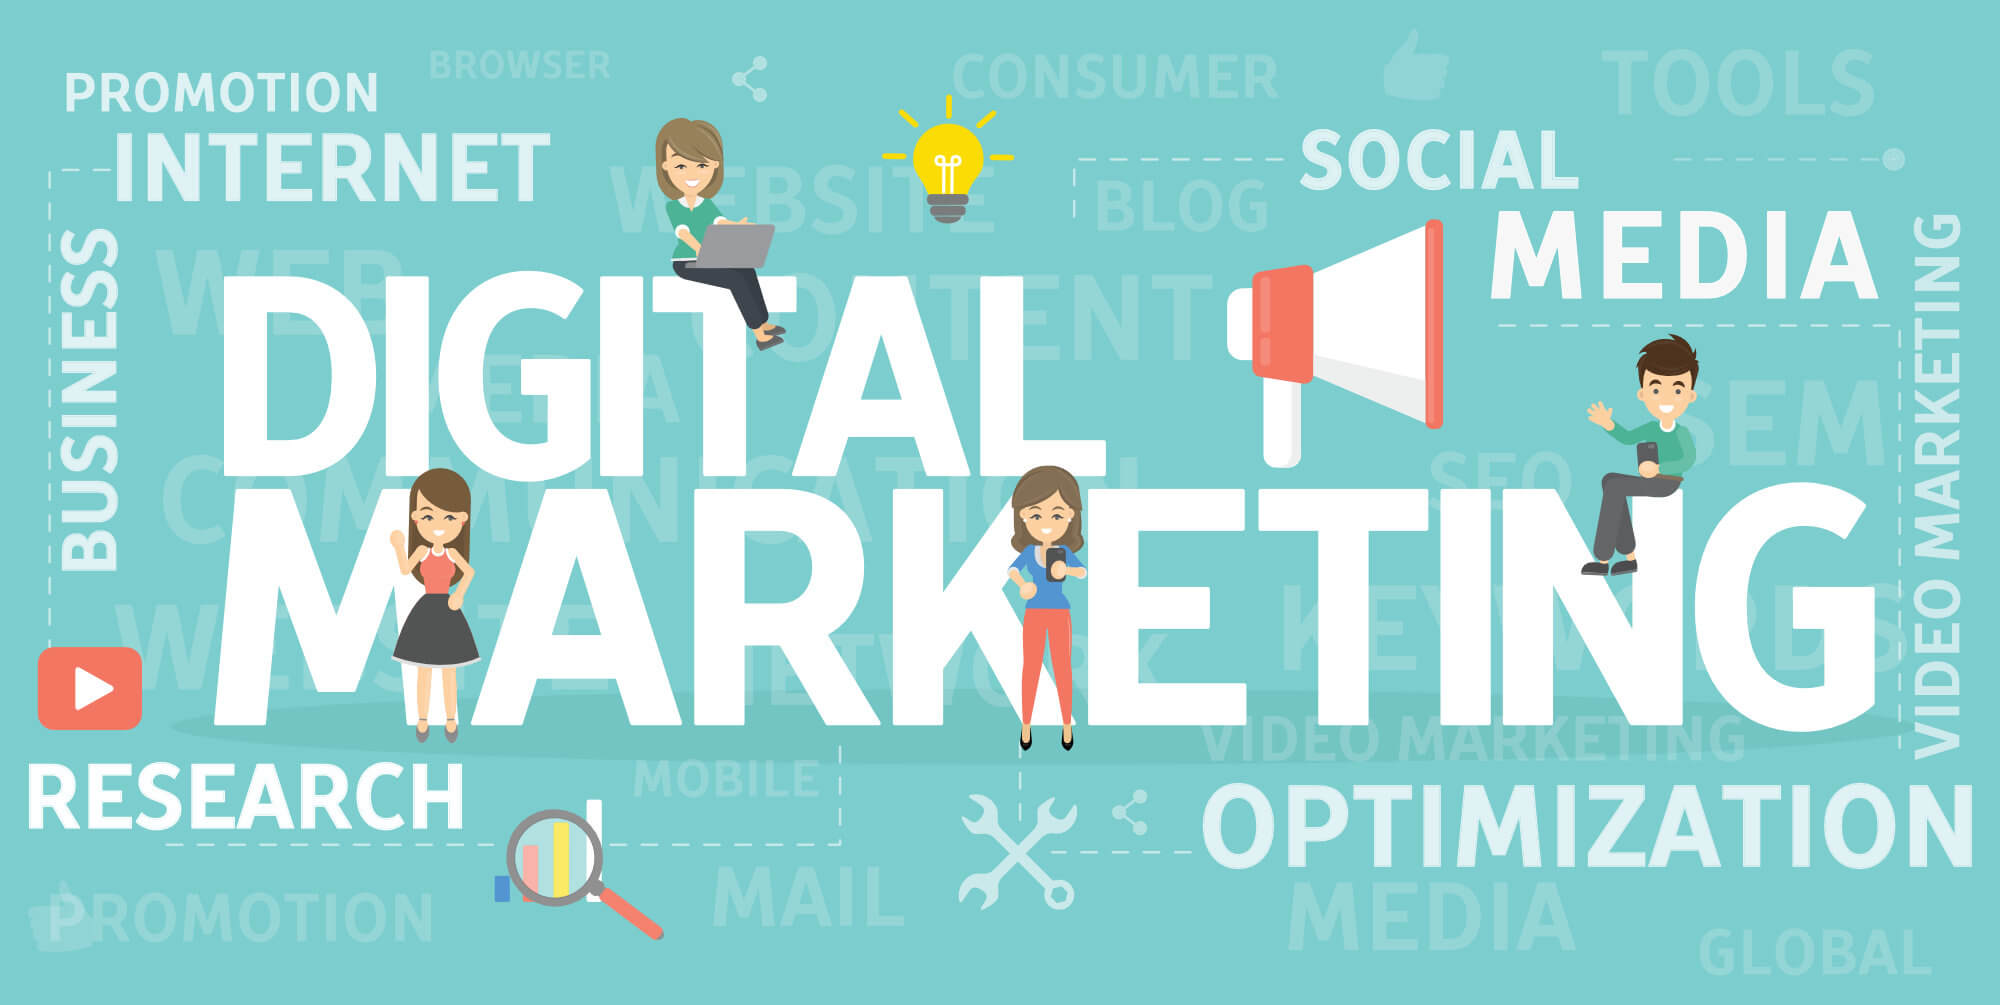 B2B Digital Marketing by Marketing Pathways